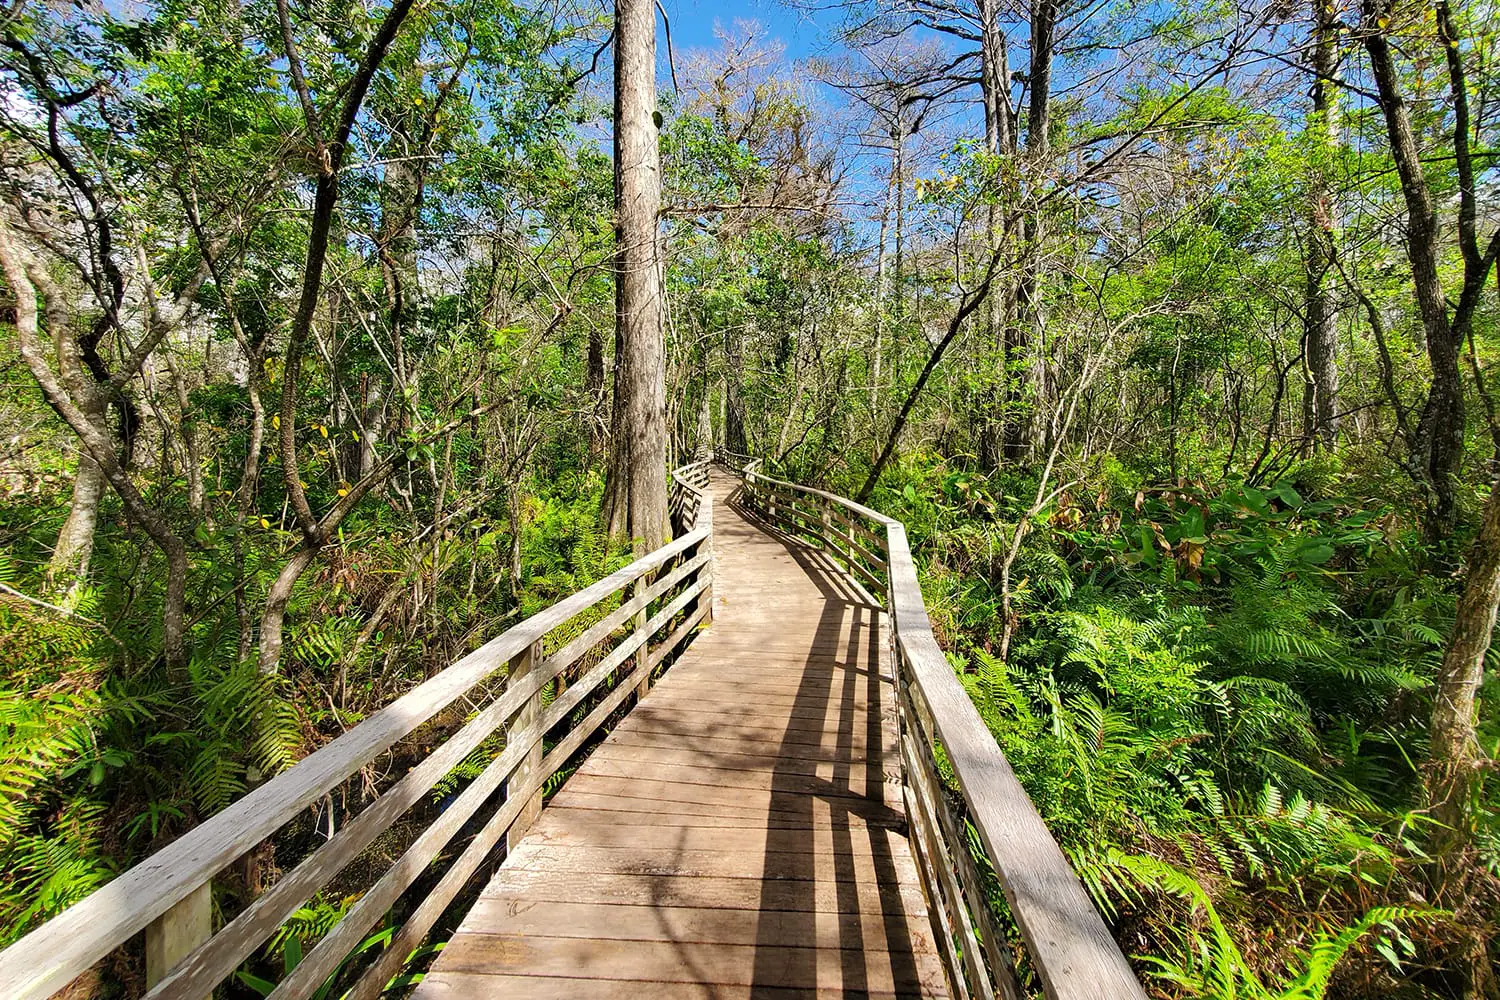 Πεζοπορία στο καταφύγιο Audobon Corkscrew Swamp Sanctuary, Florida Everglades Ecosystem - Nature Walking Trail, Protected Forest Swamp Ecosystem